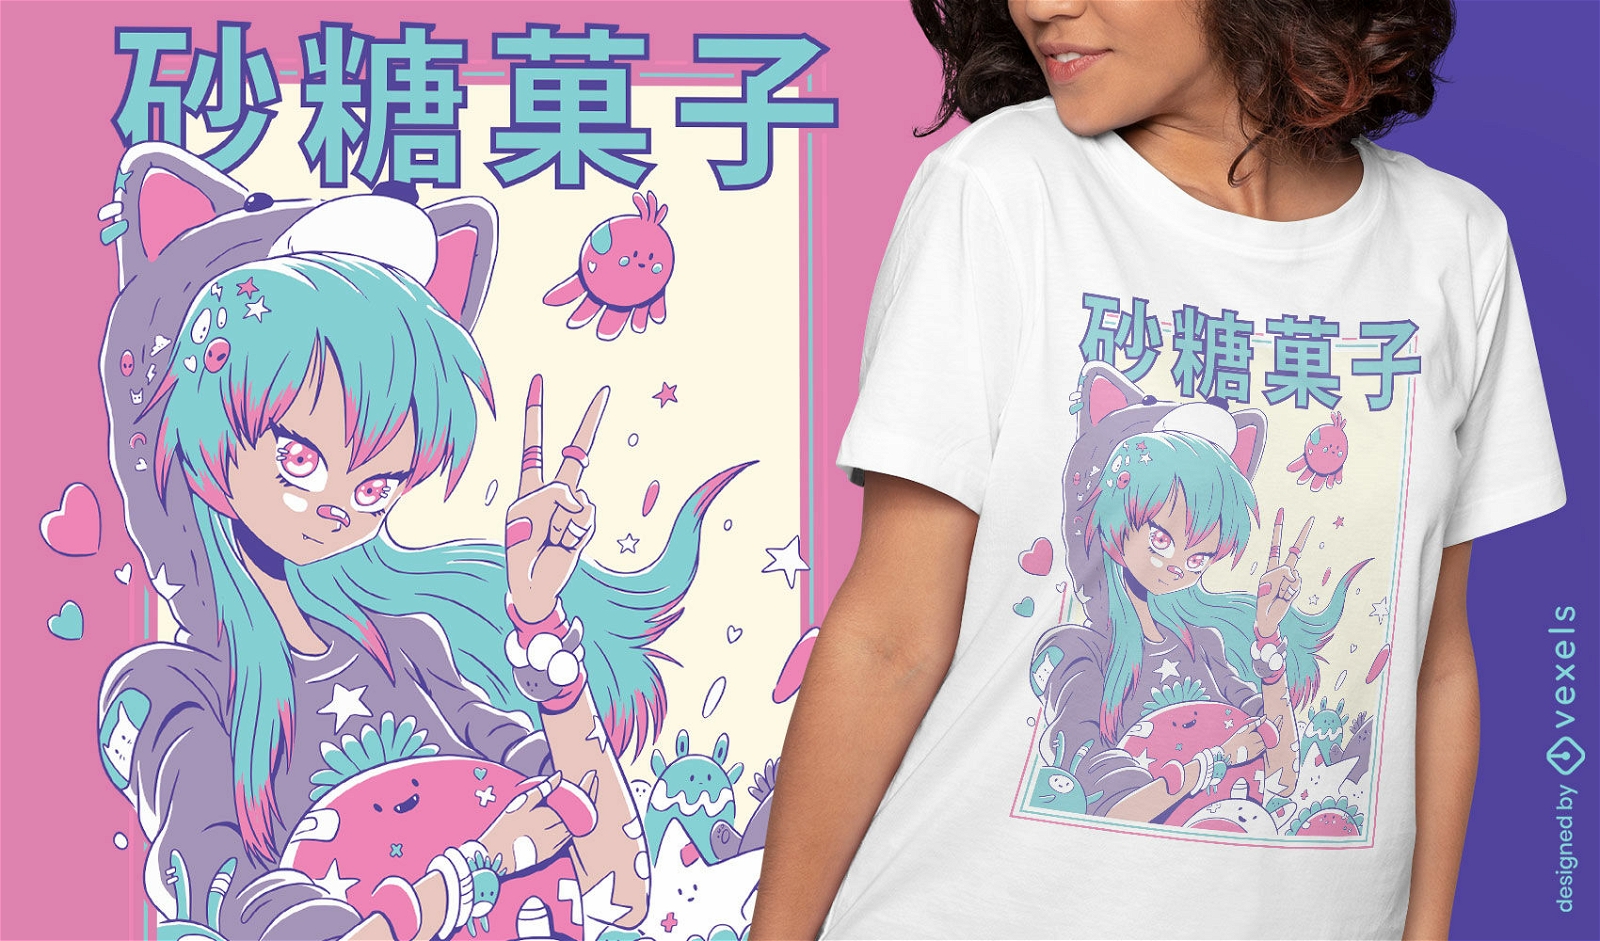 Nettes Anime-M?dchen mit Pl?sch-T-Shirt-Design